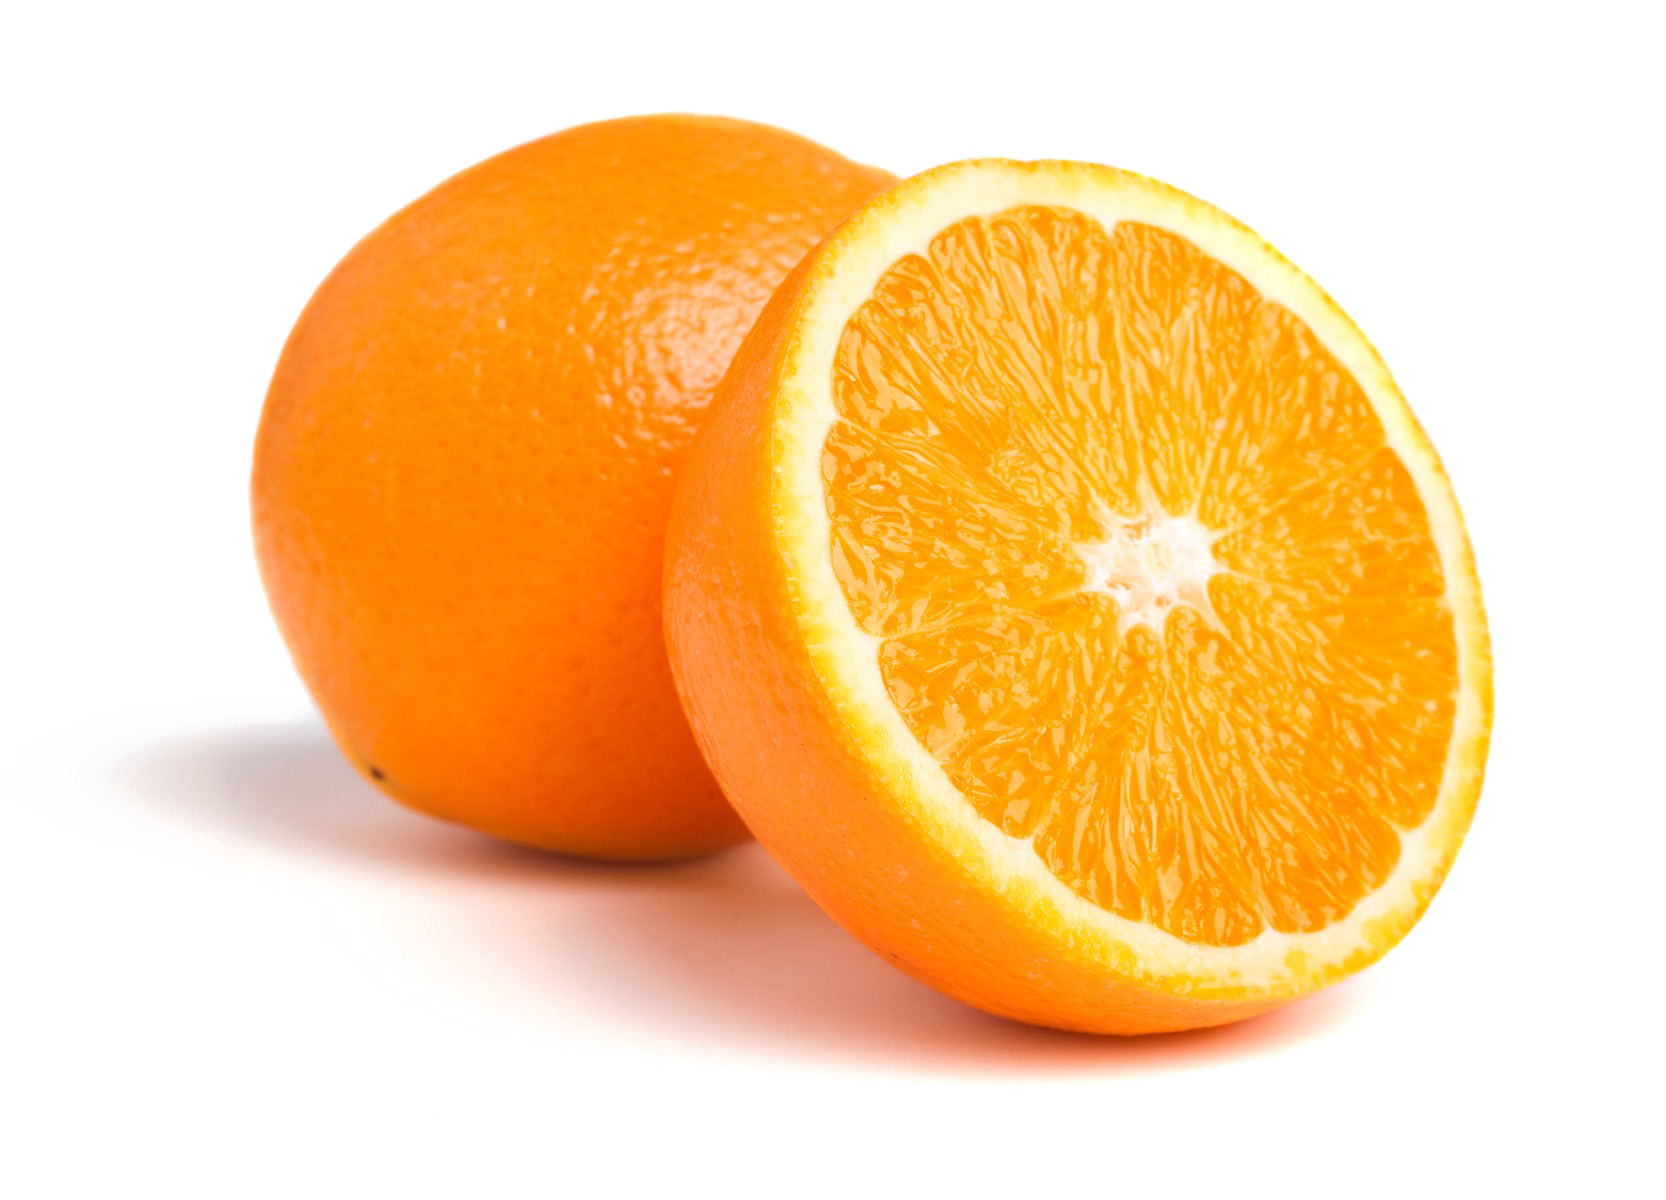 Immagine a metà arancione